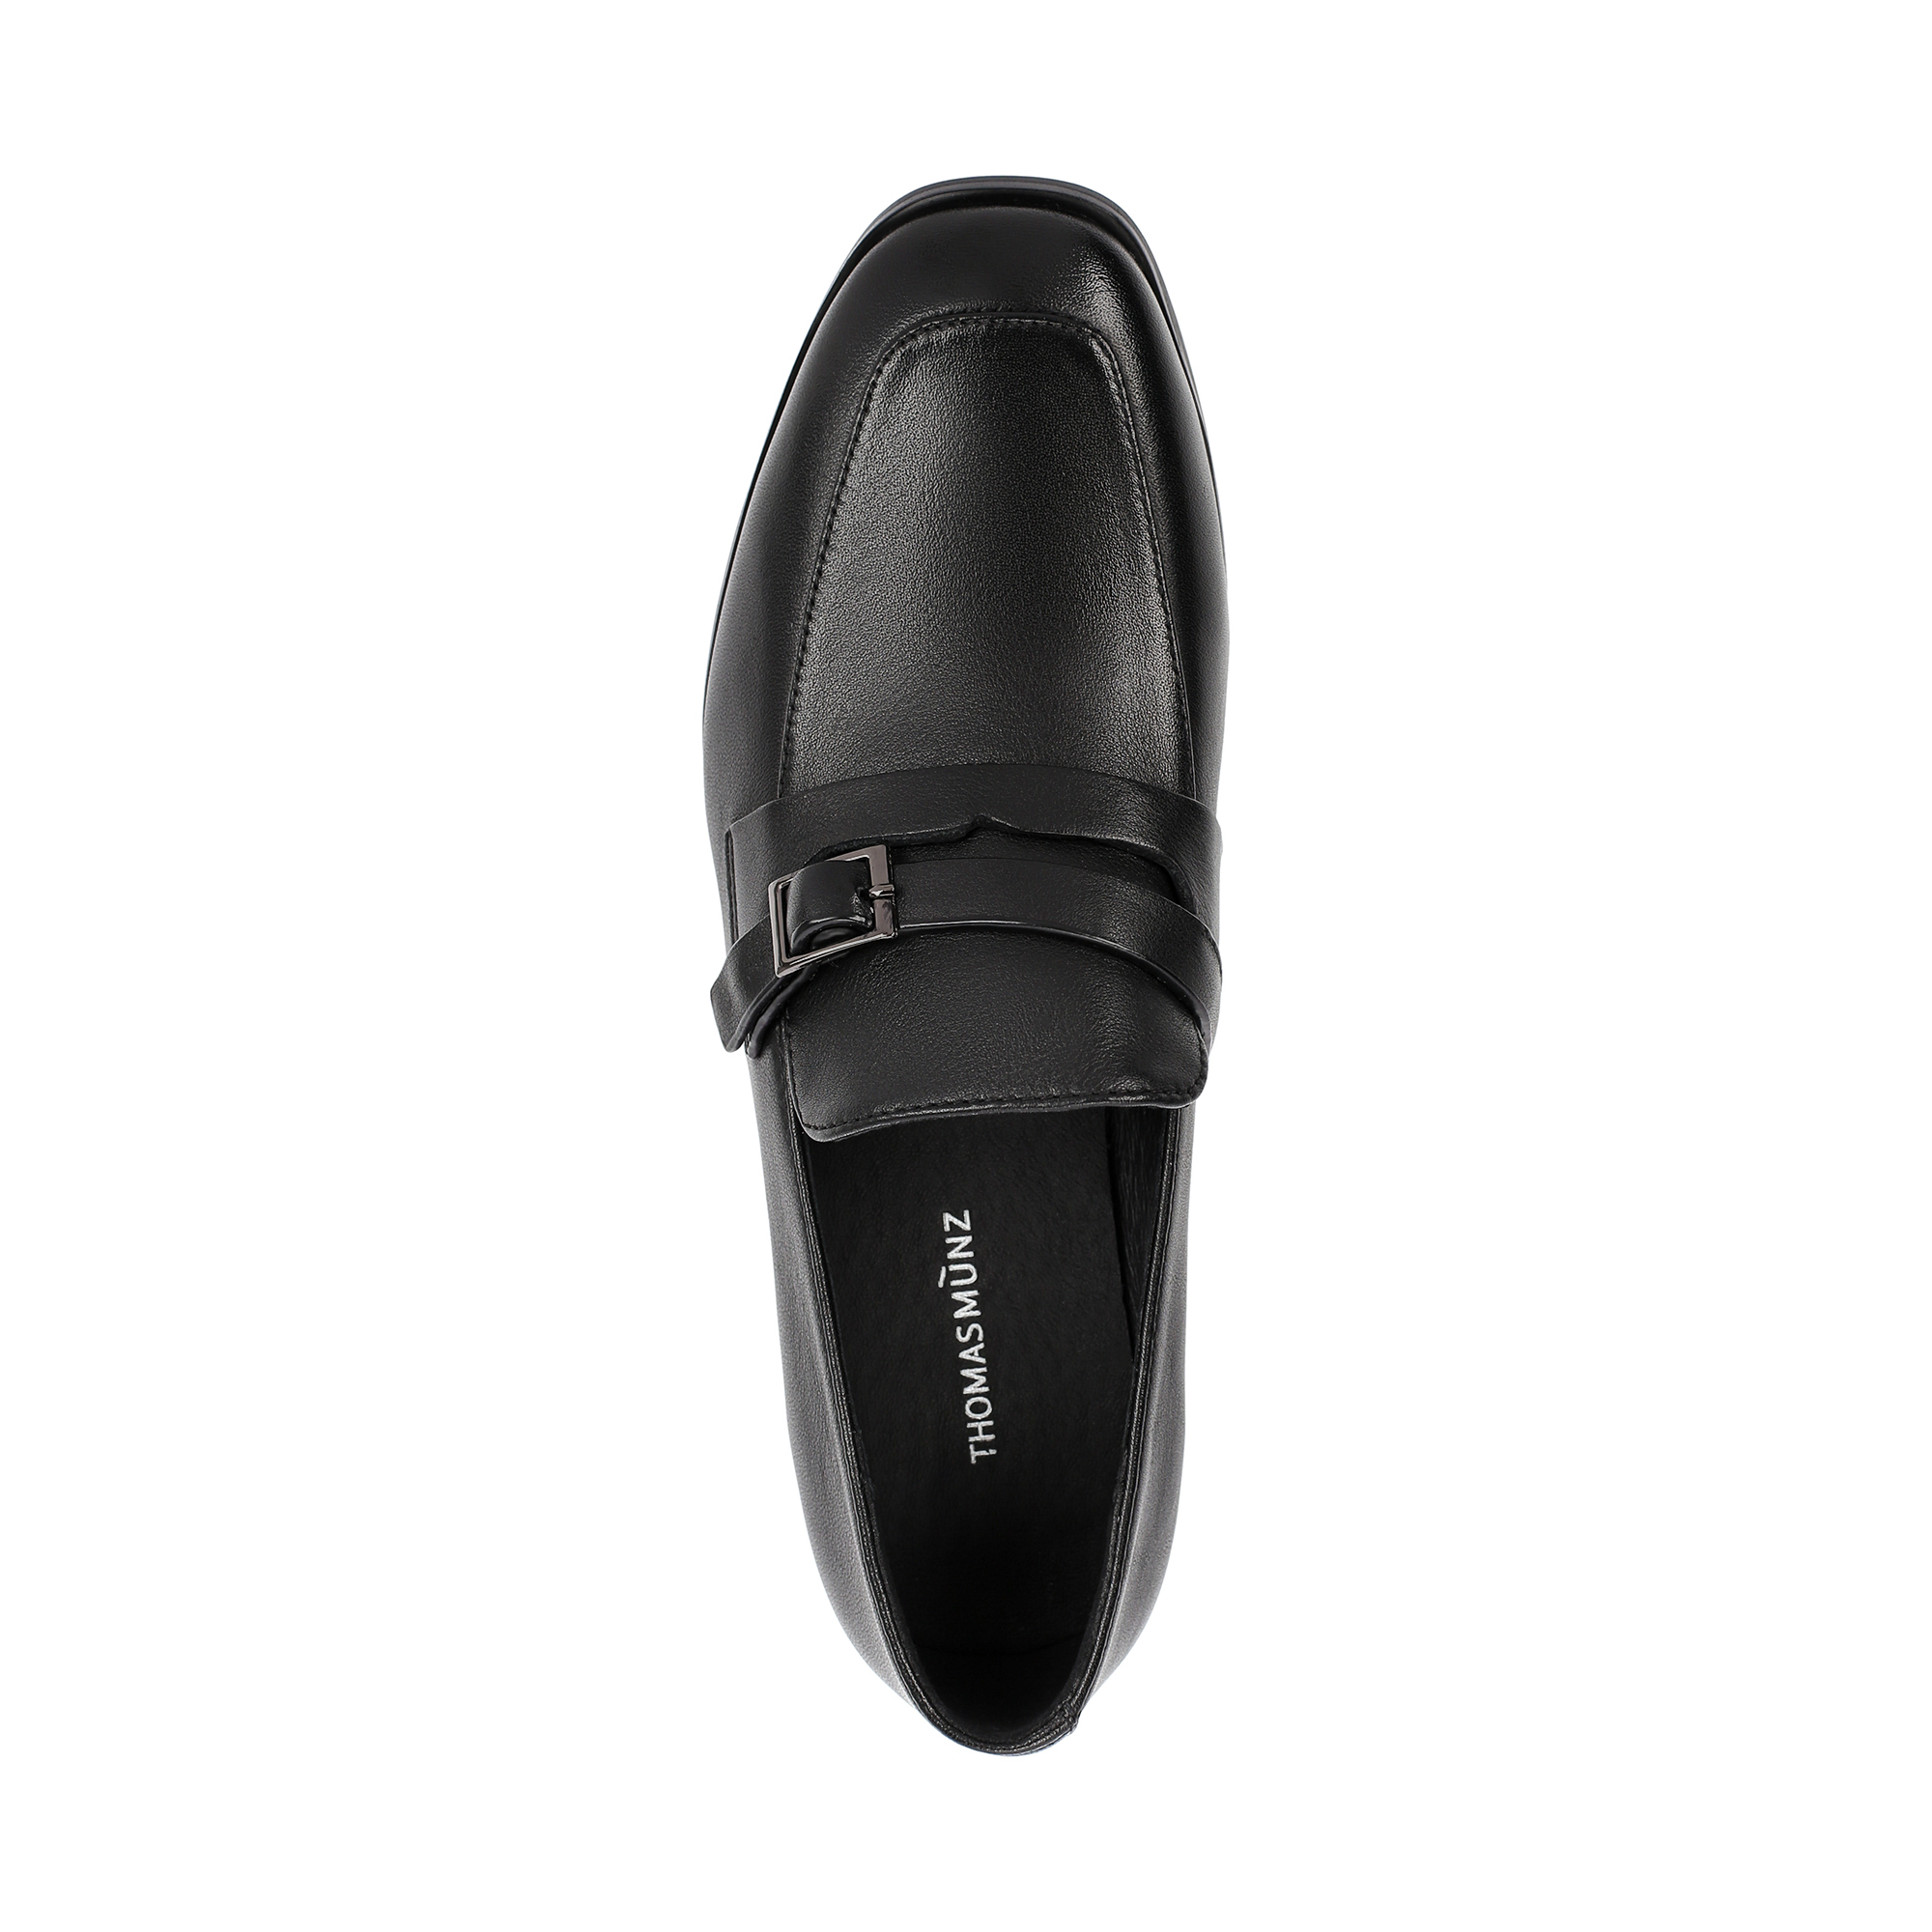 Туфли Thomas Munz 058-977A-1102, цвет черный, размер 37 - фото 5